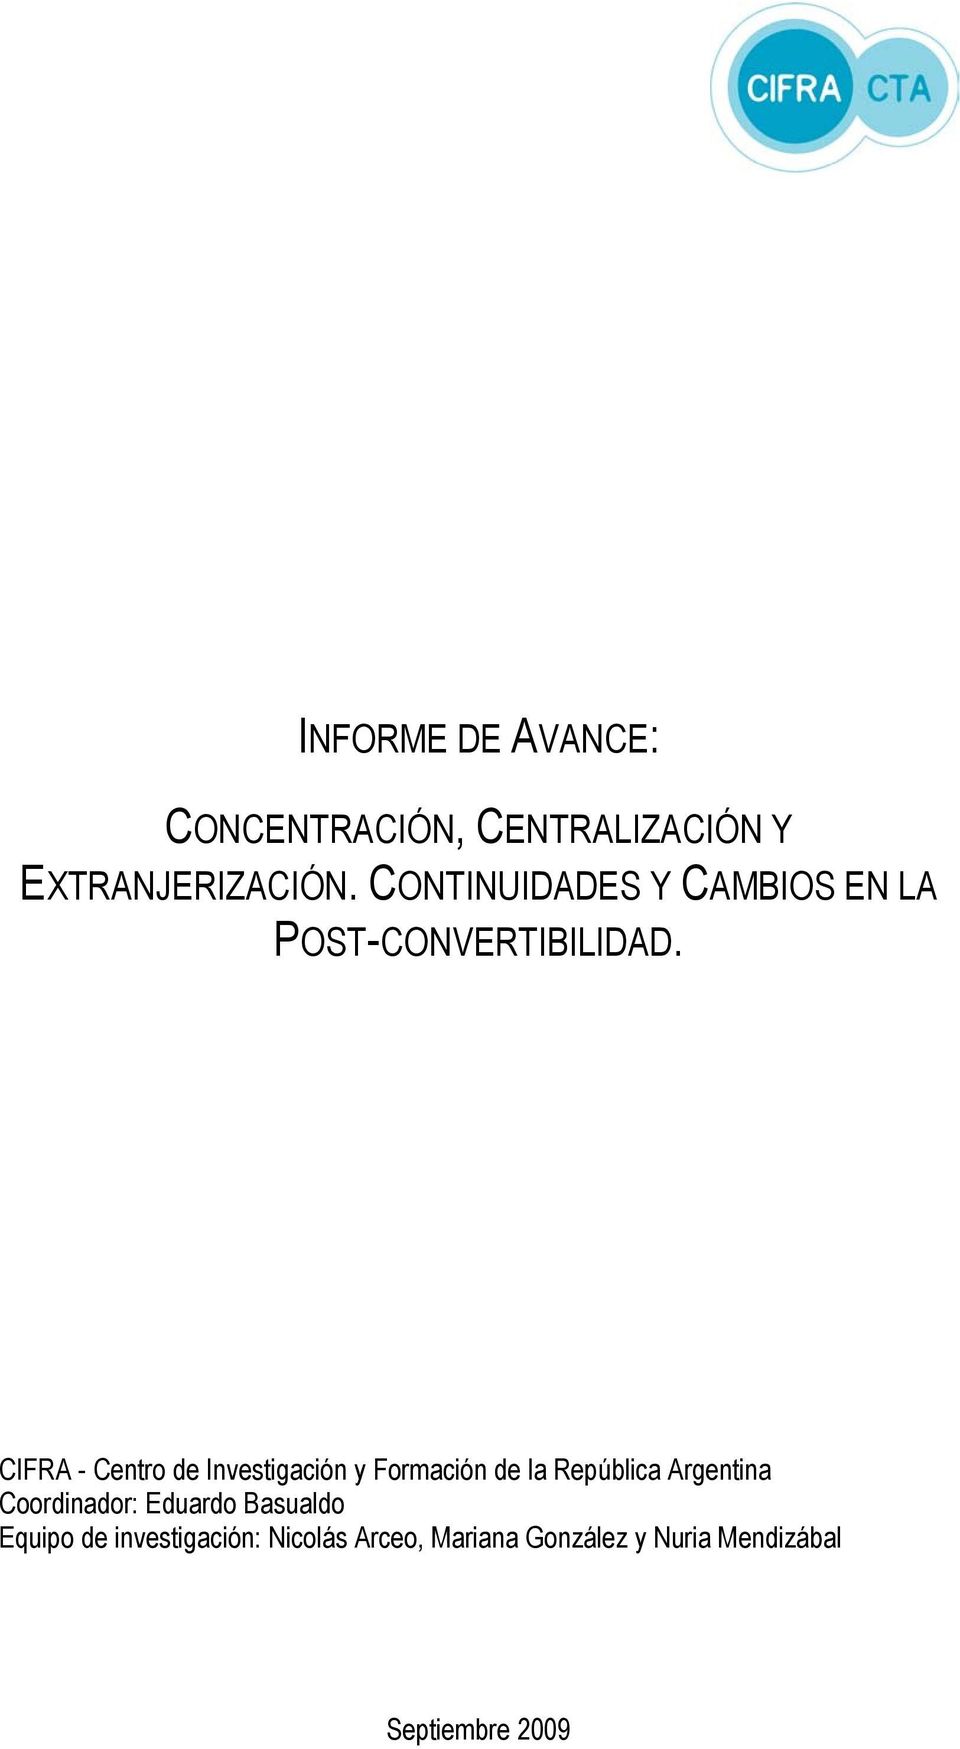 CIFRA - Centro de Investigación y Formación de la República Argentina